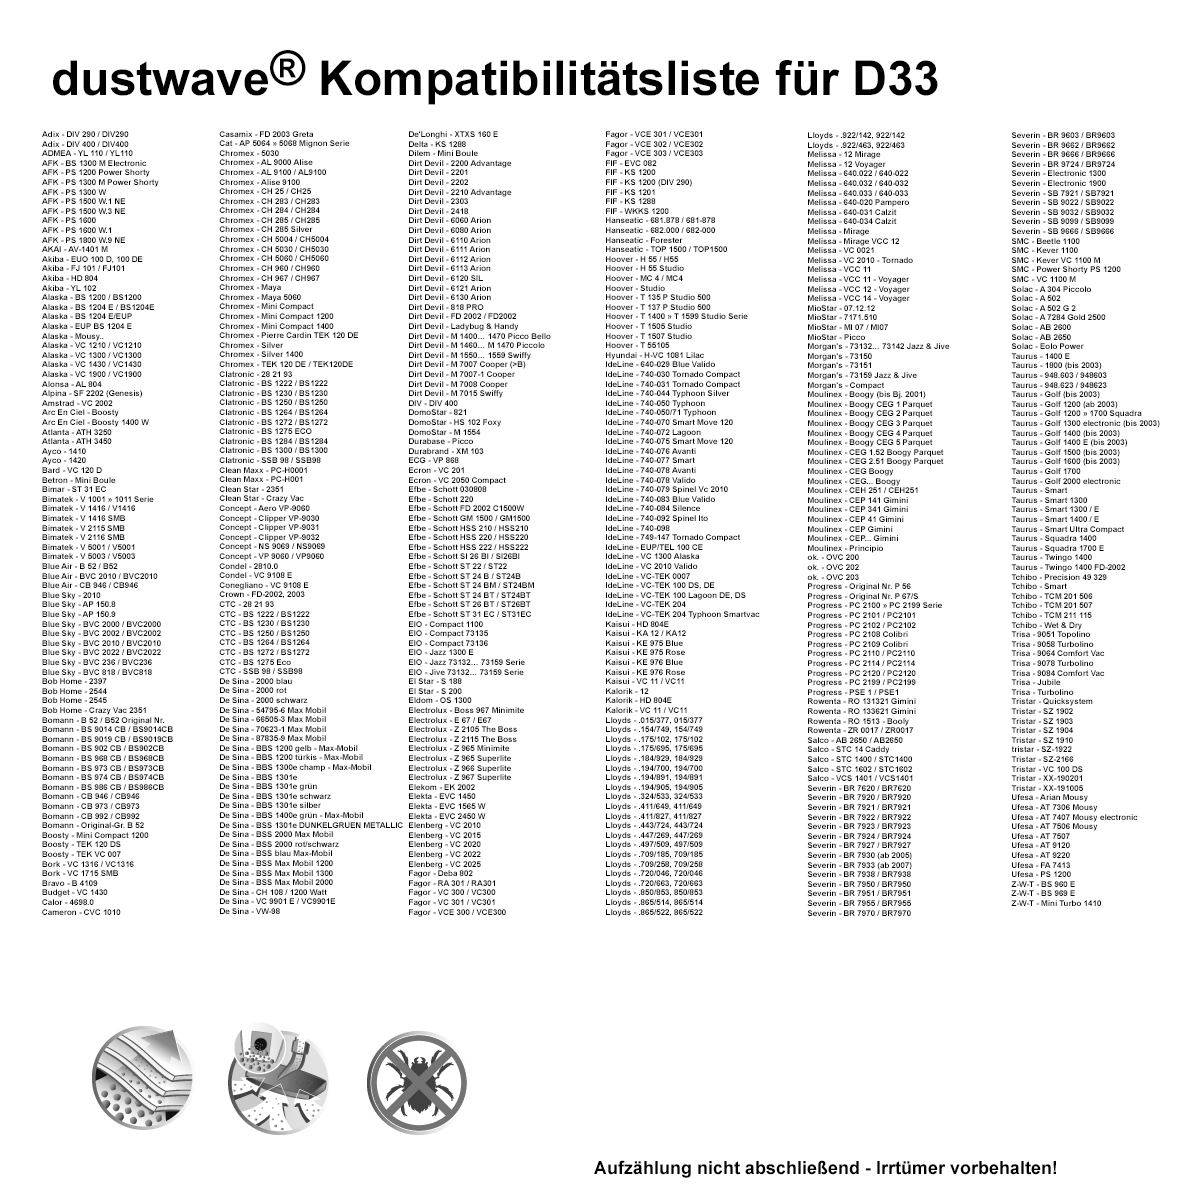 Dustwave® 20 Staubsaugerbeutel für Akiba FJ 101 / FJ101 - hocheffizient mit Hygieneverschluss - Made in Germany